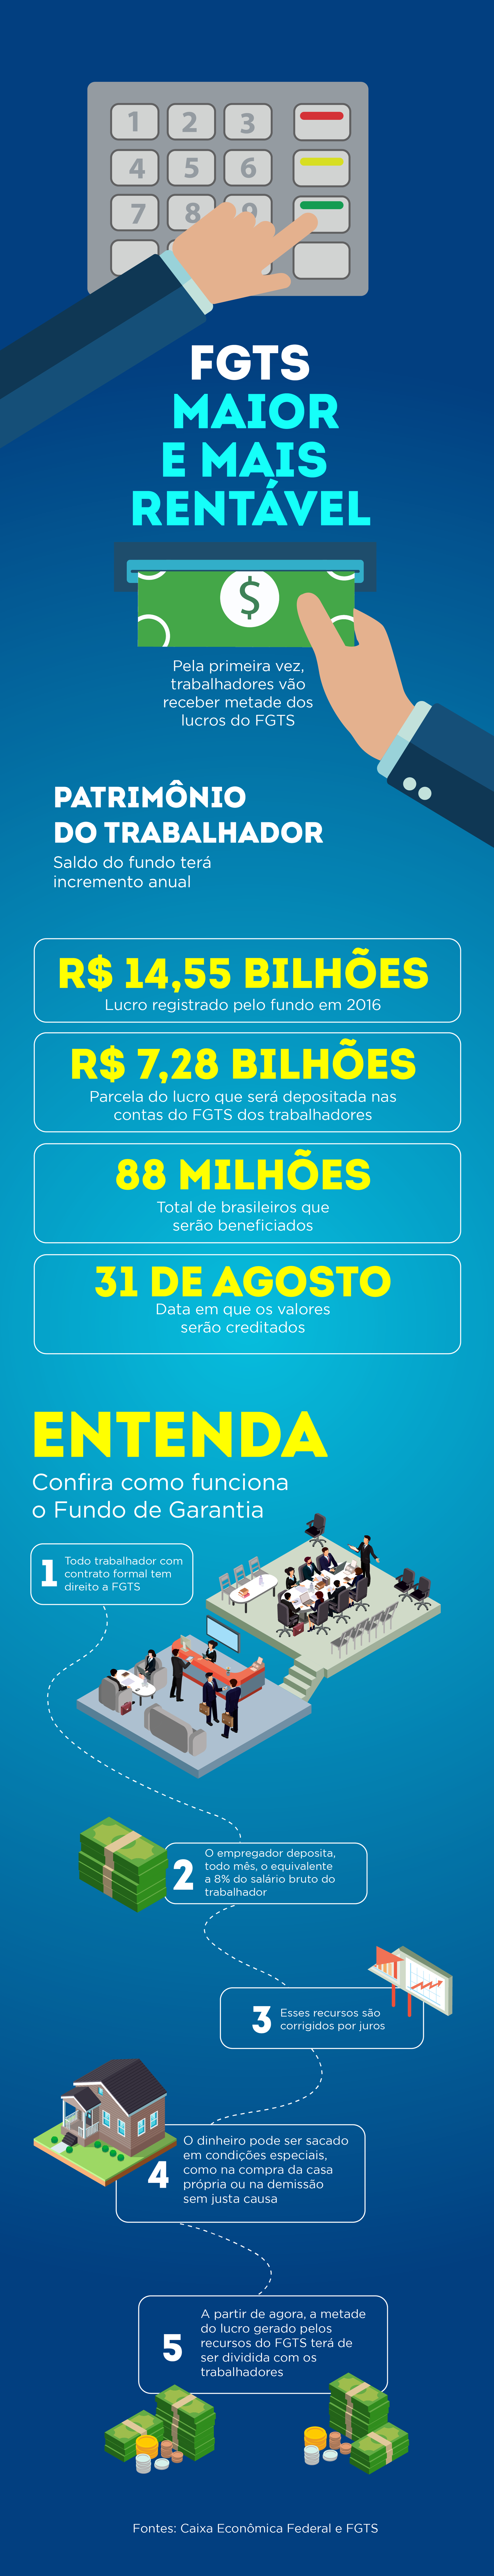  Portal Brasil, com informações da Caixa e do FGTS